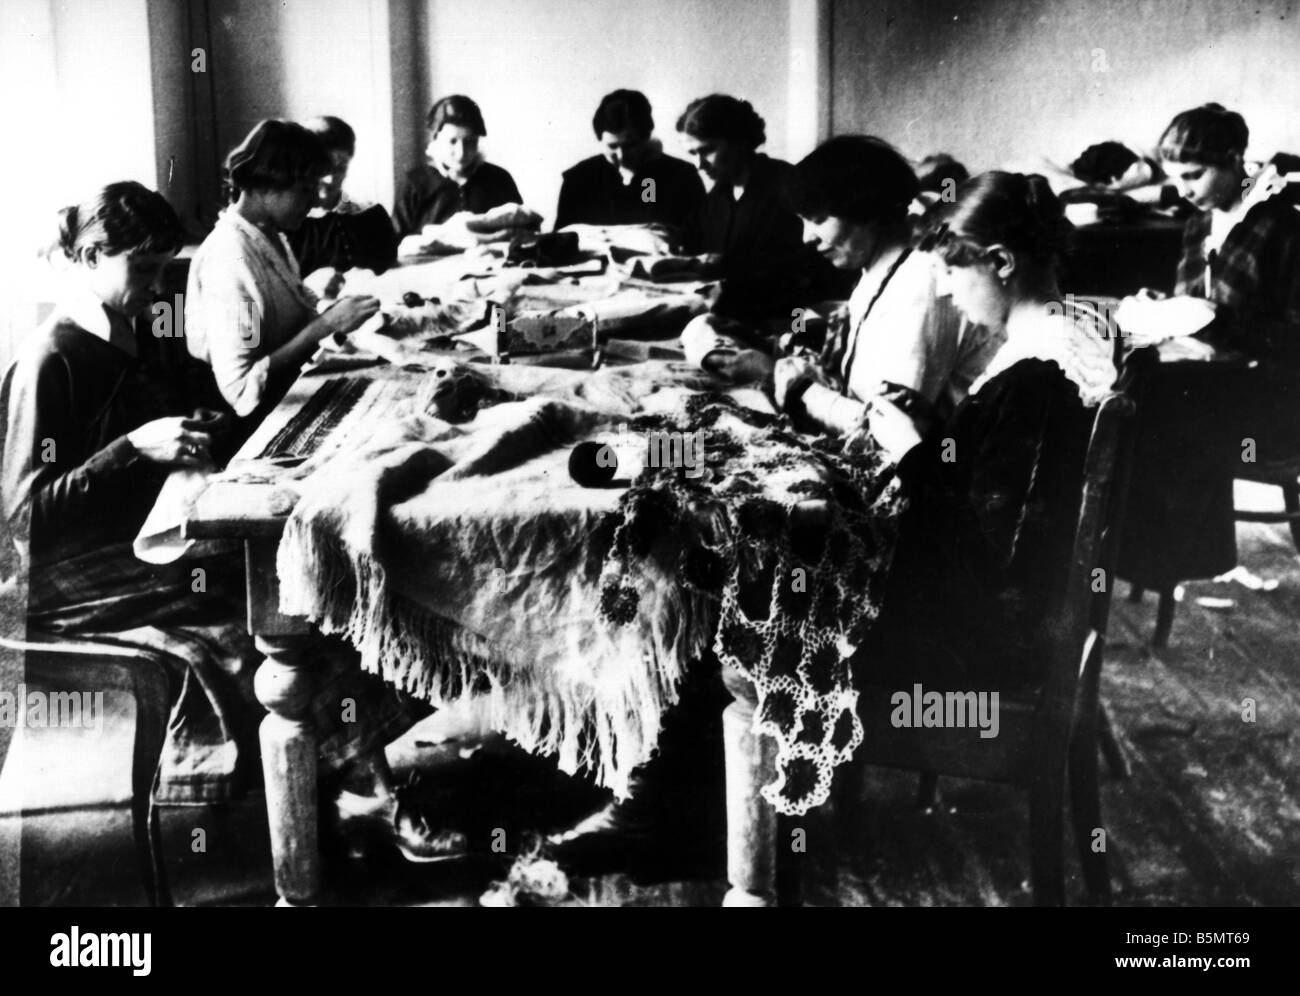 9È 1915 0 0 A1 17 ricami ebraica workshop 1915 Storia dell'Ebraismo ebrei orientali le ragazze ebree lavorare nel seminario di ricamo Foto Stock